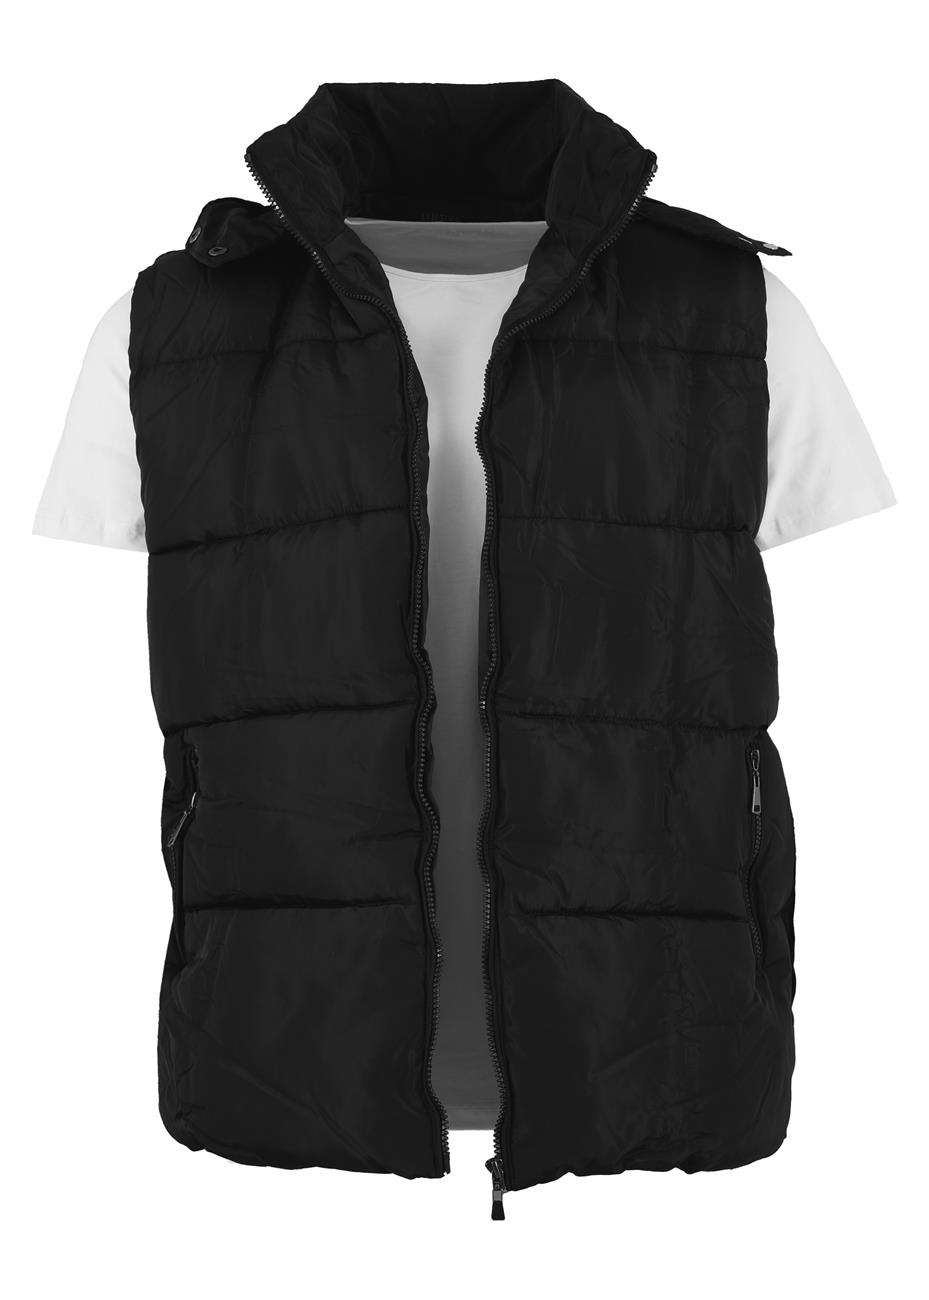 Αντρικό jacket αμάνικο με τσέπες & κουκούλα. Basic style